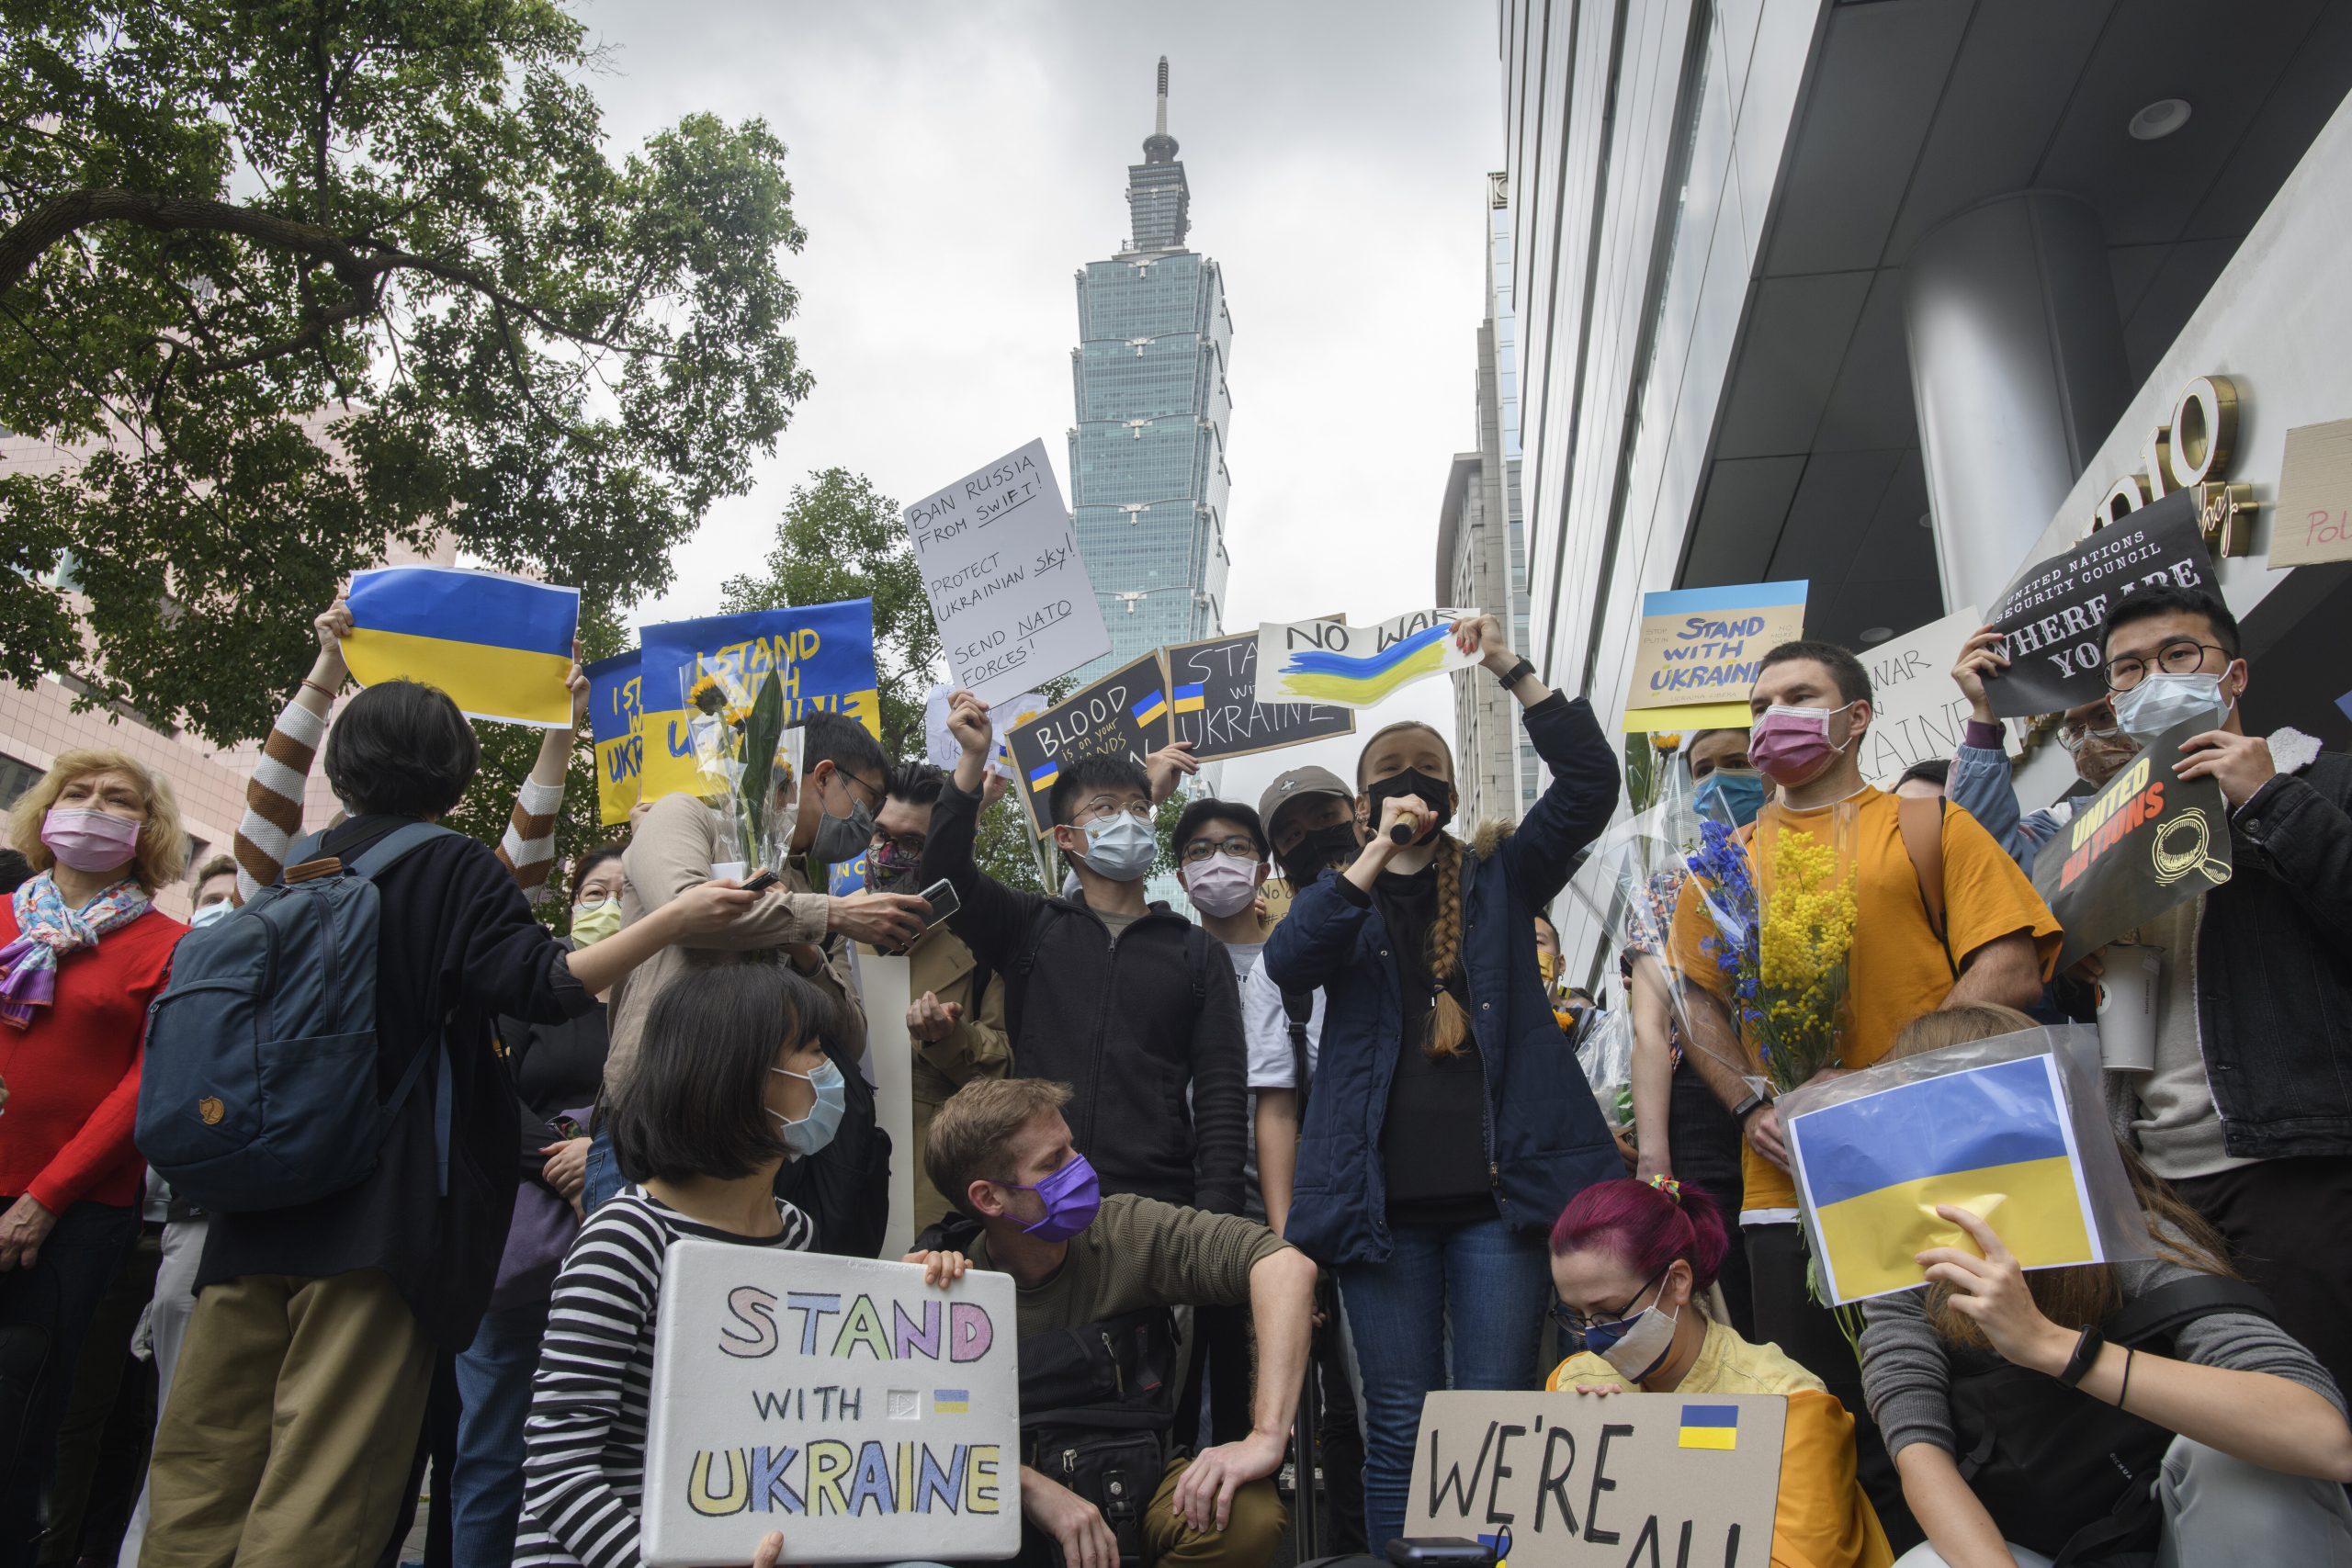 Hôm nay Ukraine, ngày mai Đài Loan” – Saigon Nhỏ